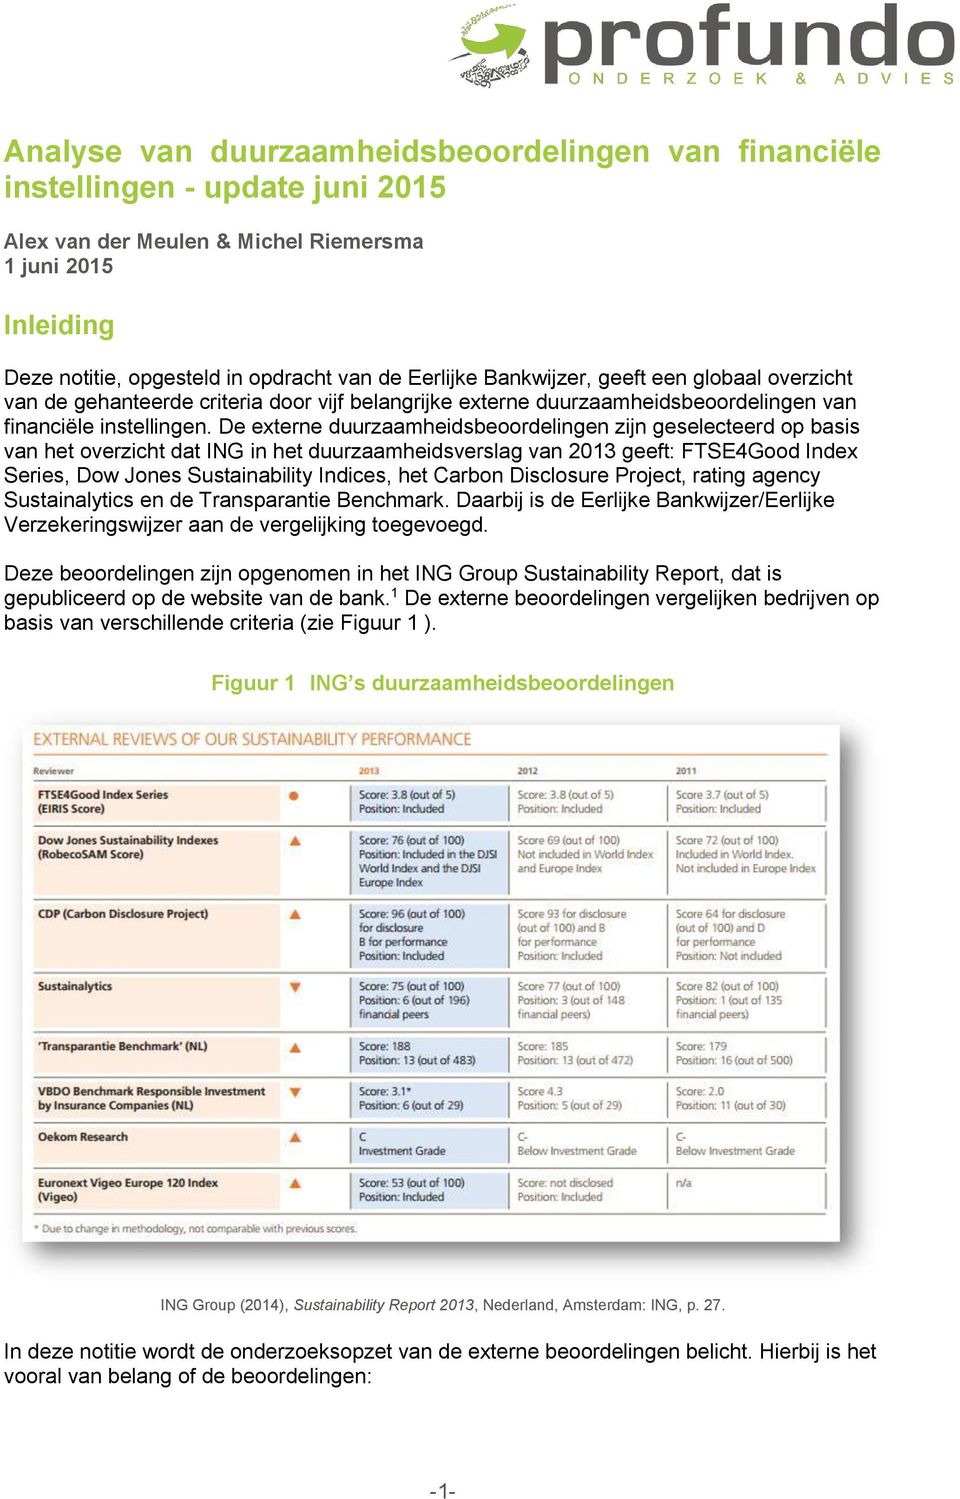 De externe duurzaamheidsbeoordelingen zijn geselecteerd op basis van het overzicht dat ING in het duurzaamheidsverslag van 2013 geeft: FTSE4Good Index Series, Dow Jones Sustainability Indices, het